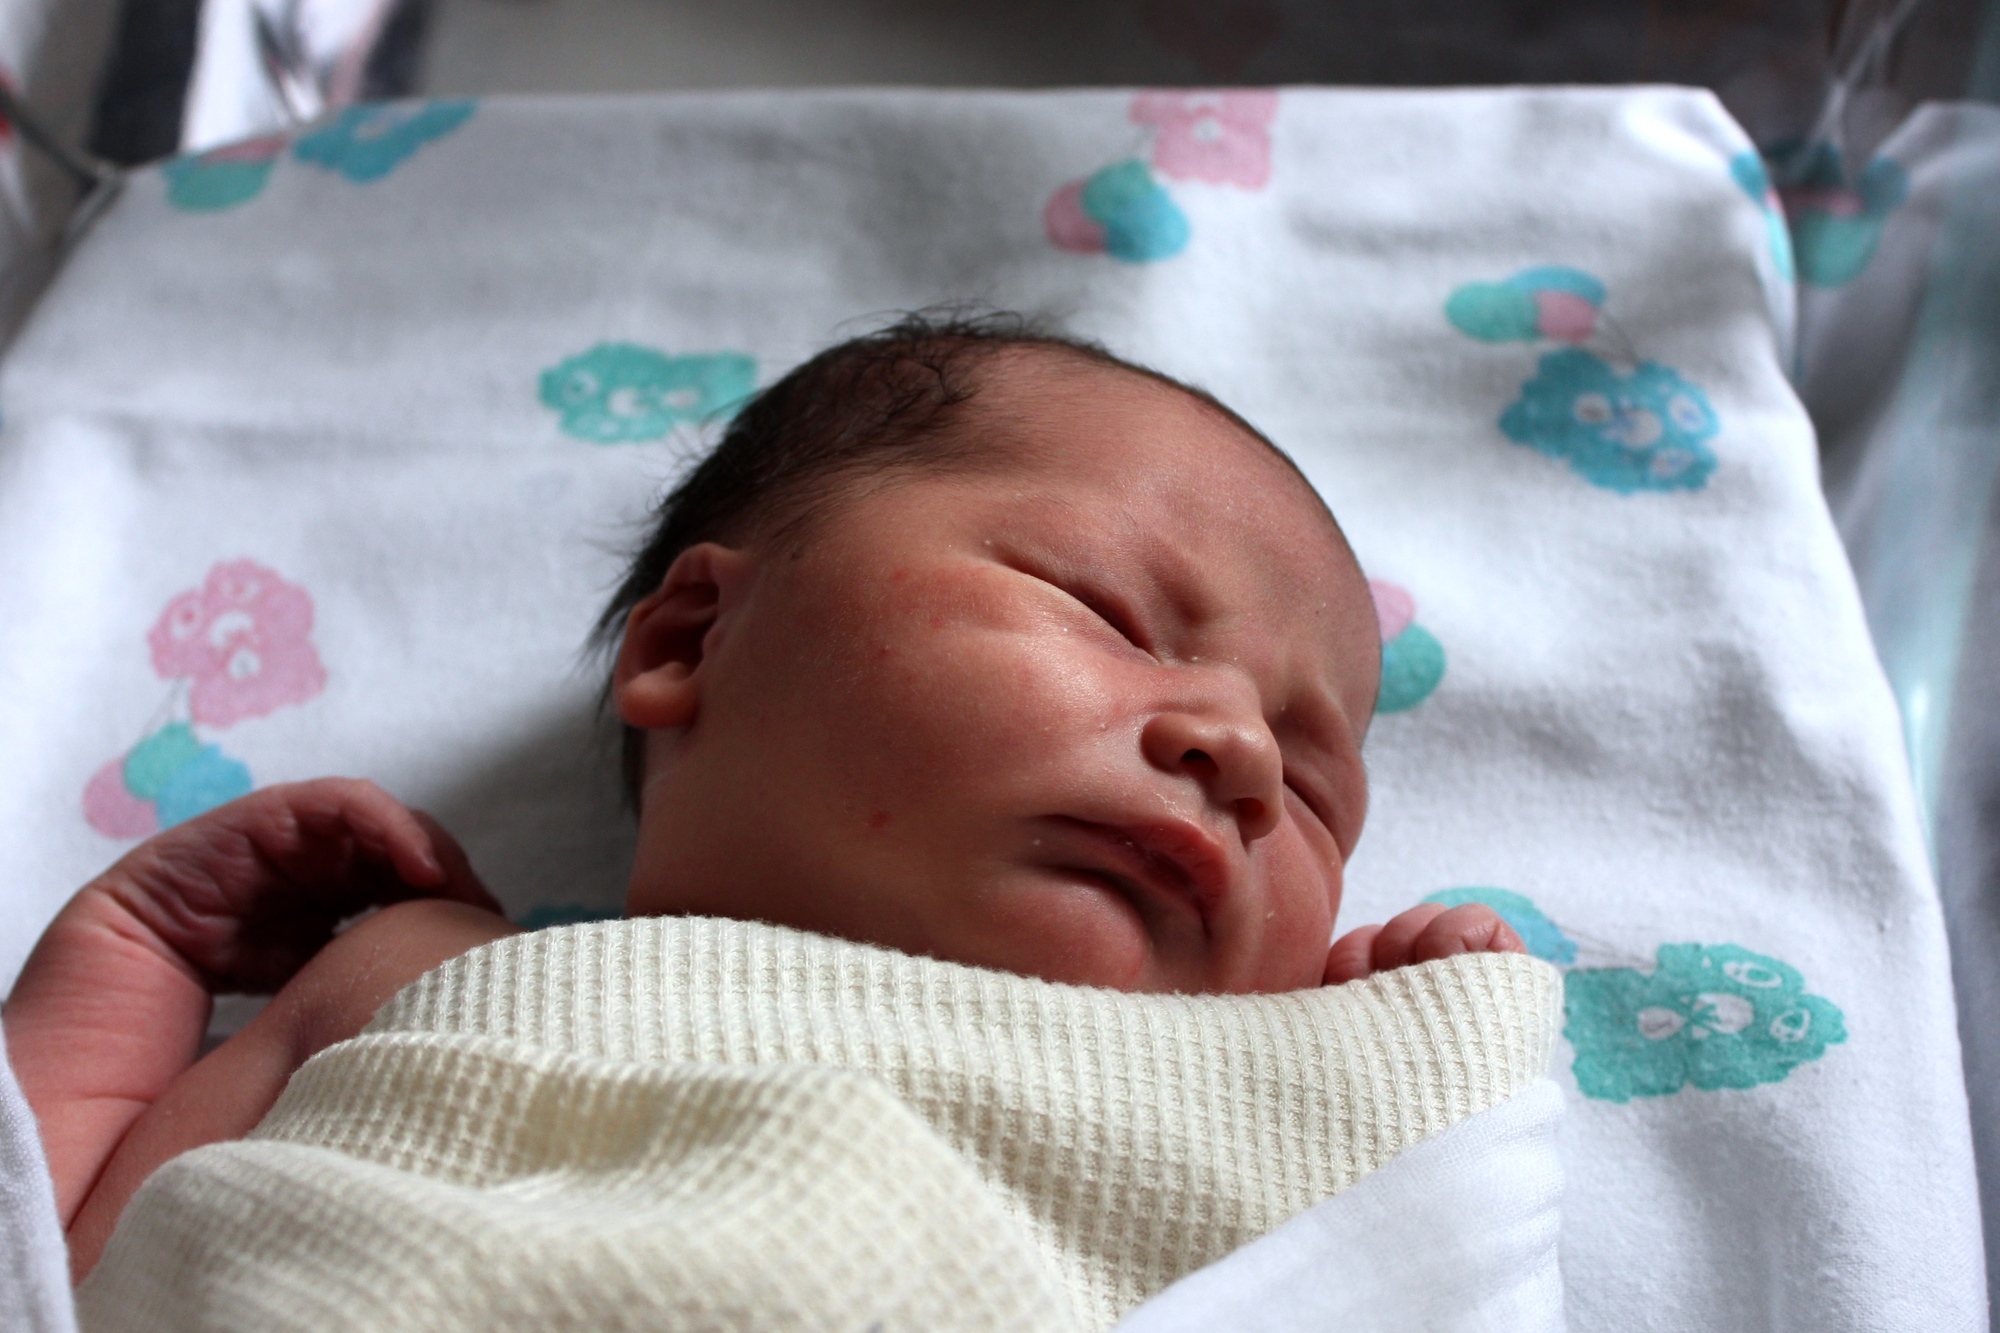 Newborn baby in a hospital